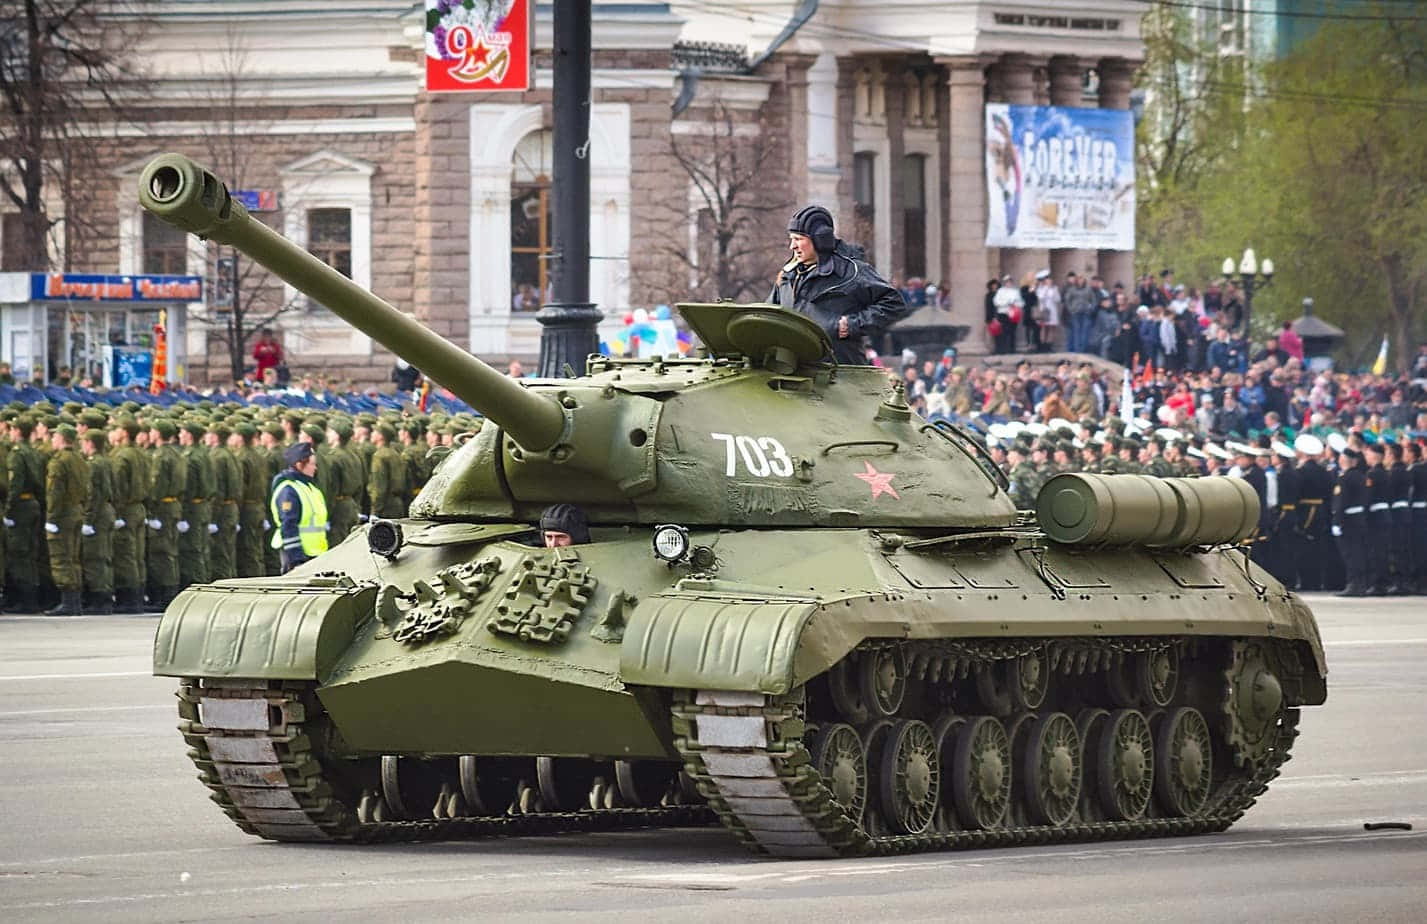 - Striking Power of Tanks